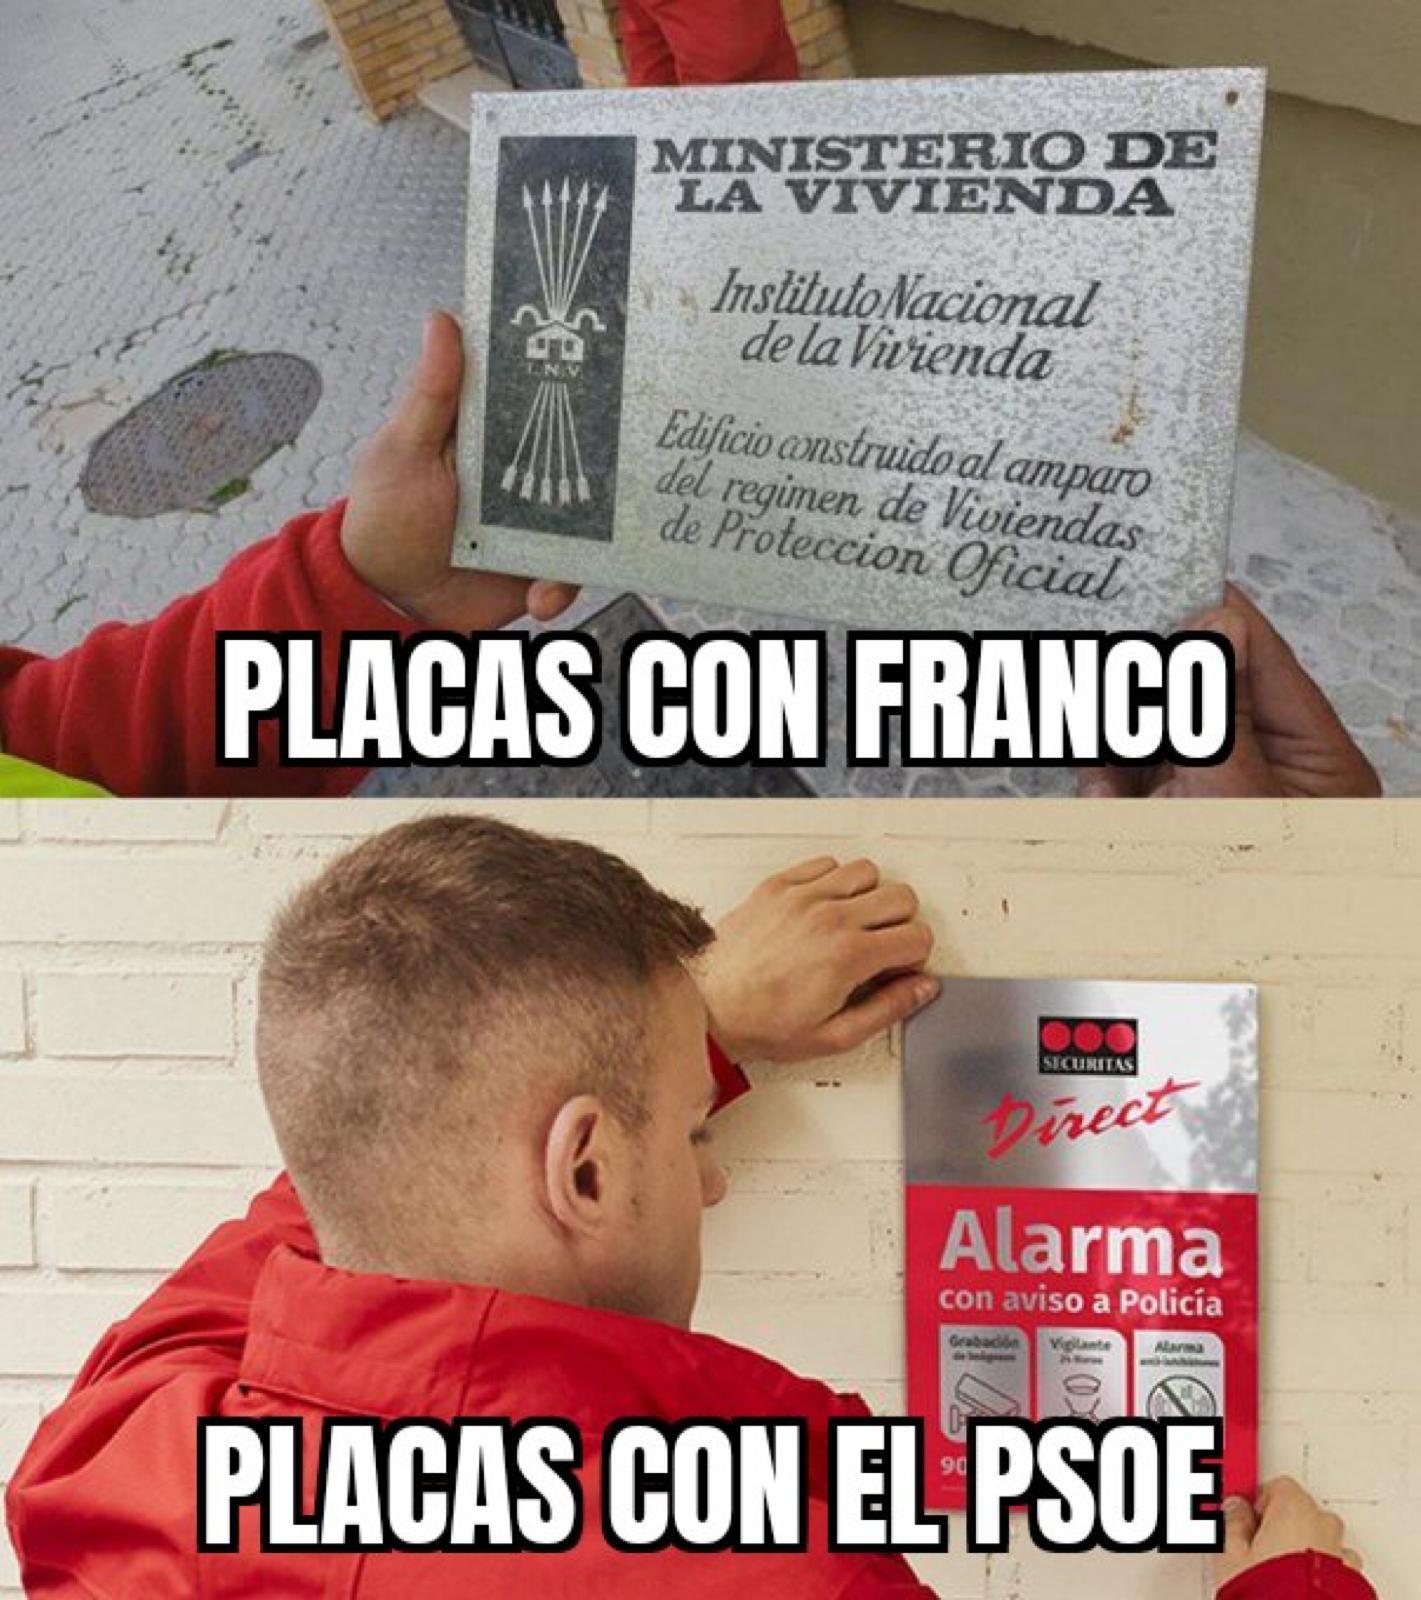 PLACAS PISOS FRANQUISMO VS SOCIALISMO.jpg